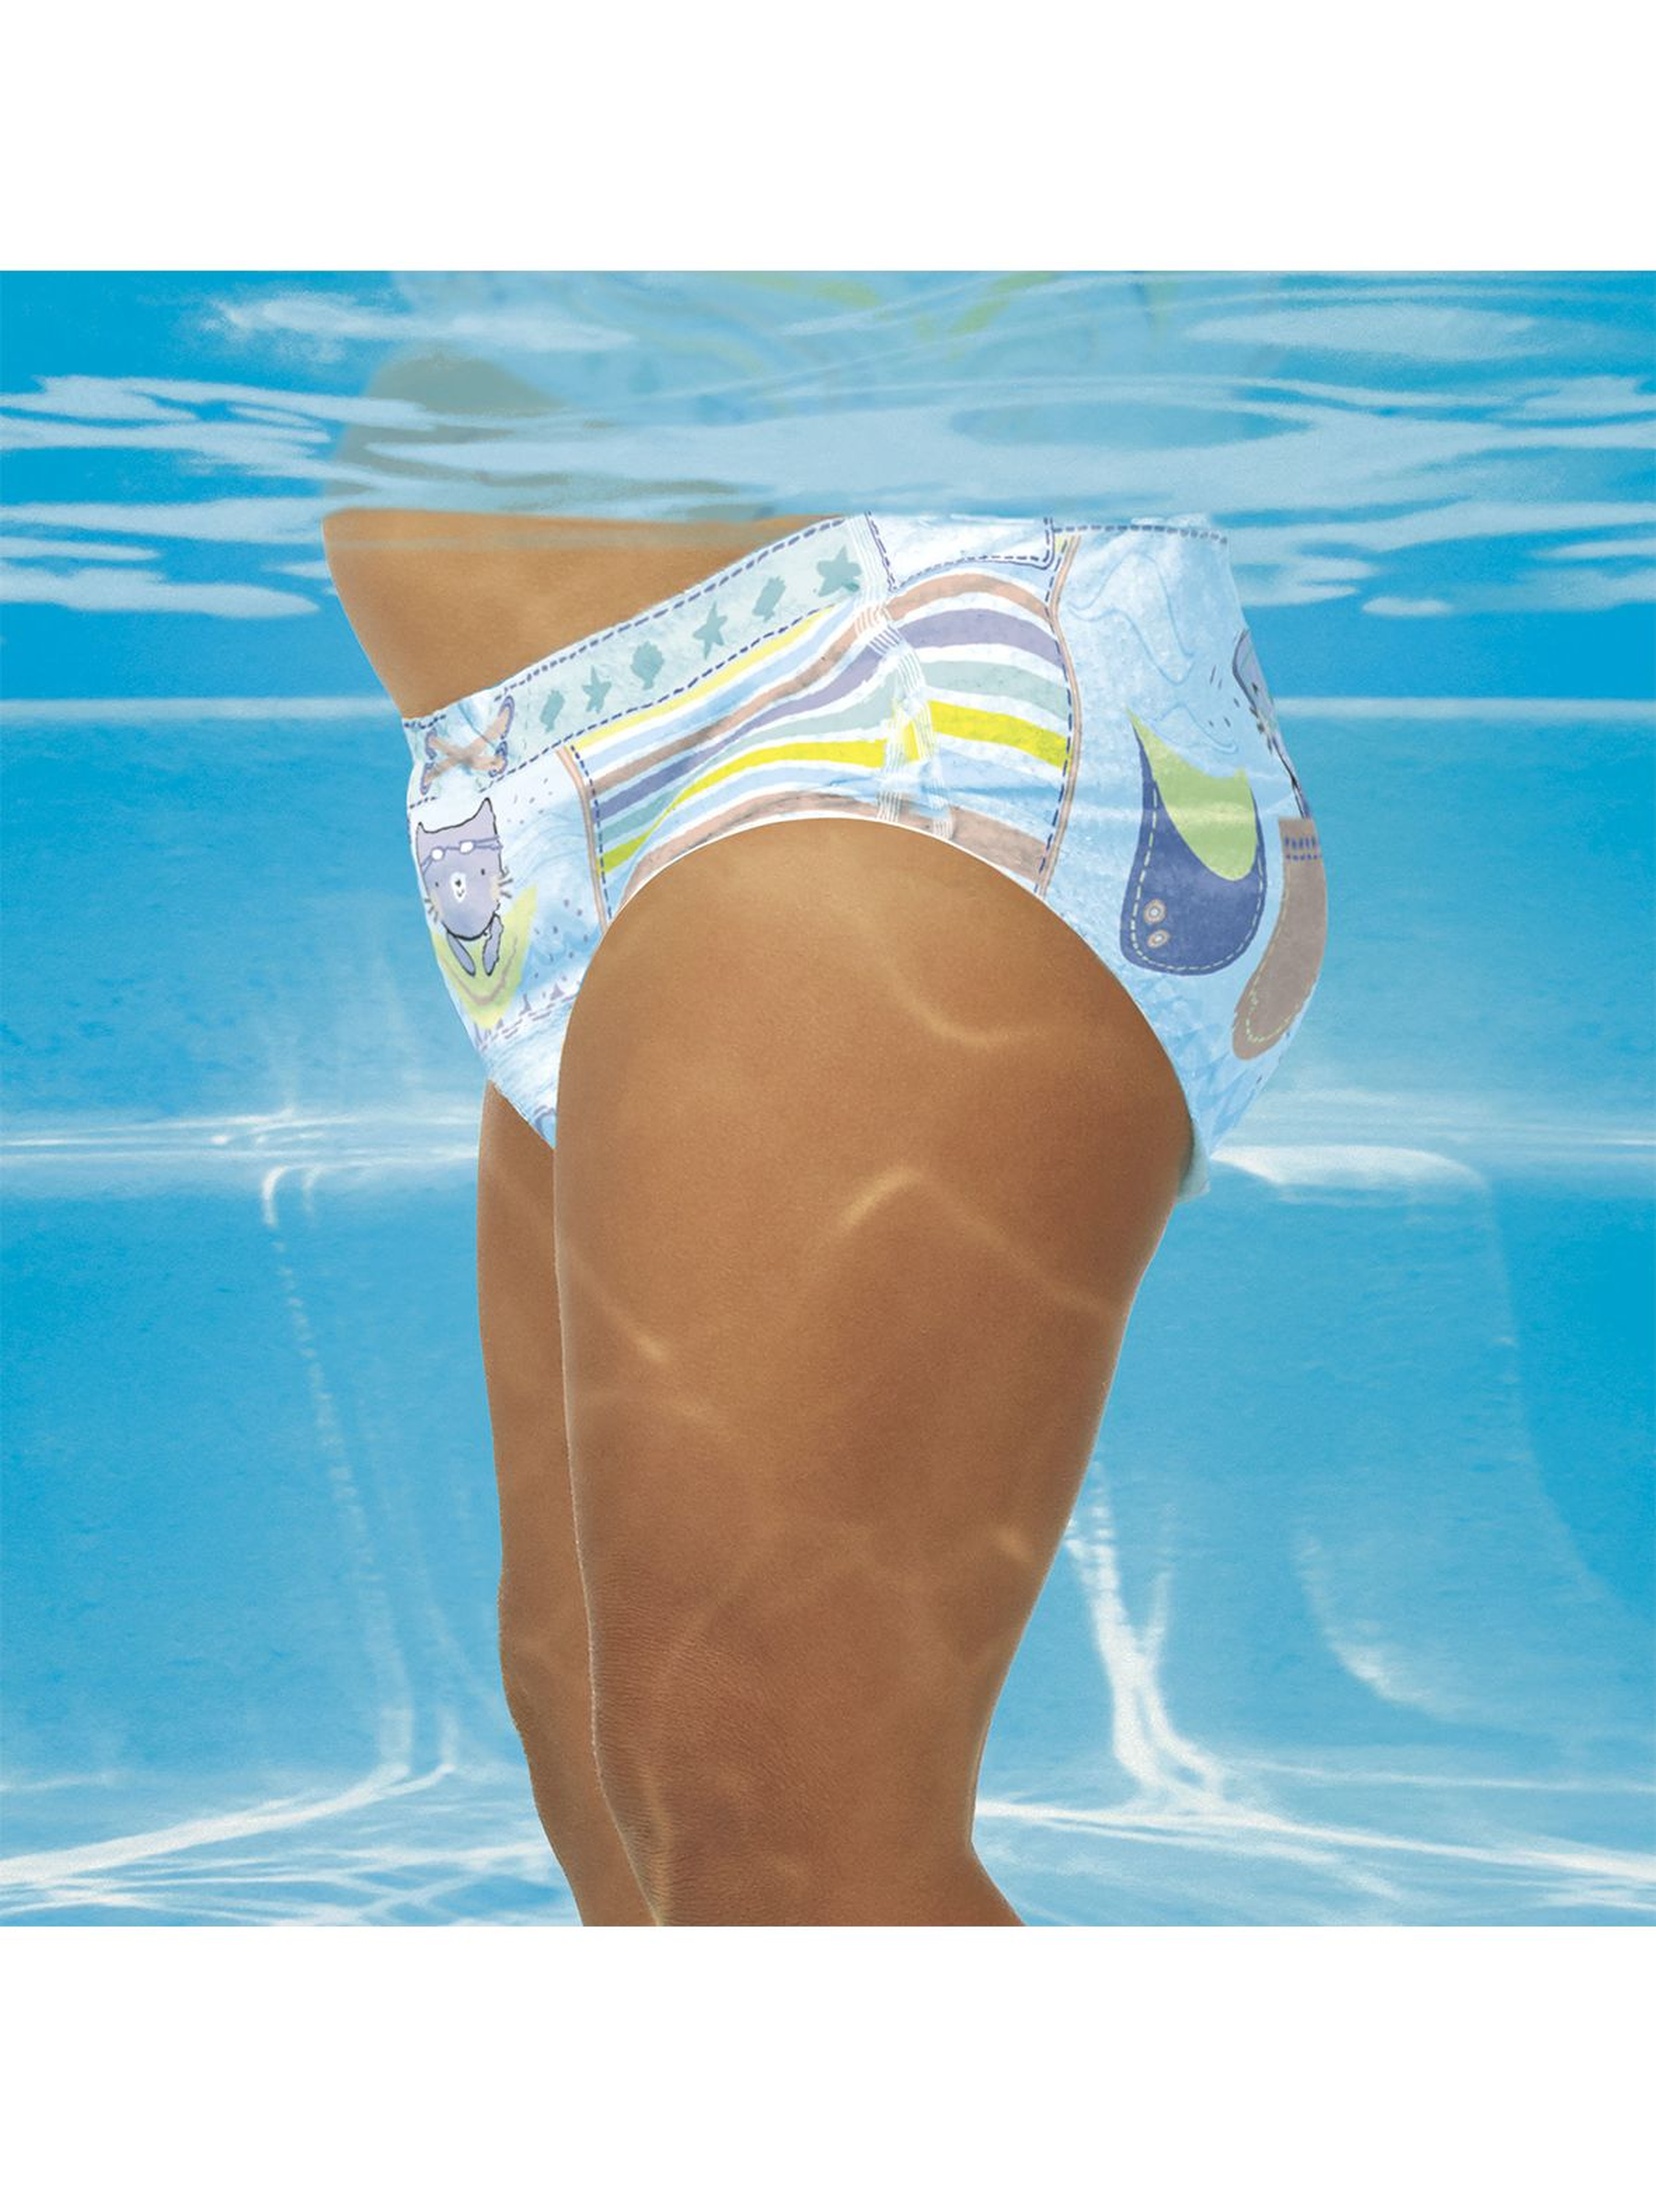 Pampers Splashers, Rozmiar 5-6, 10 Jednorazowych pieluch do pływania